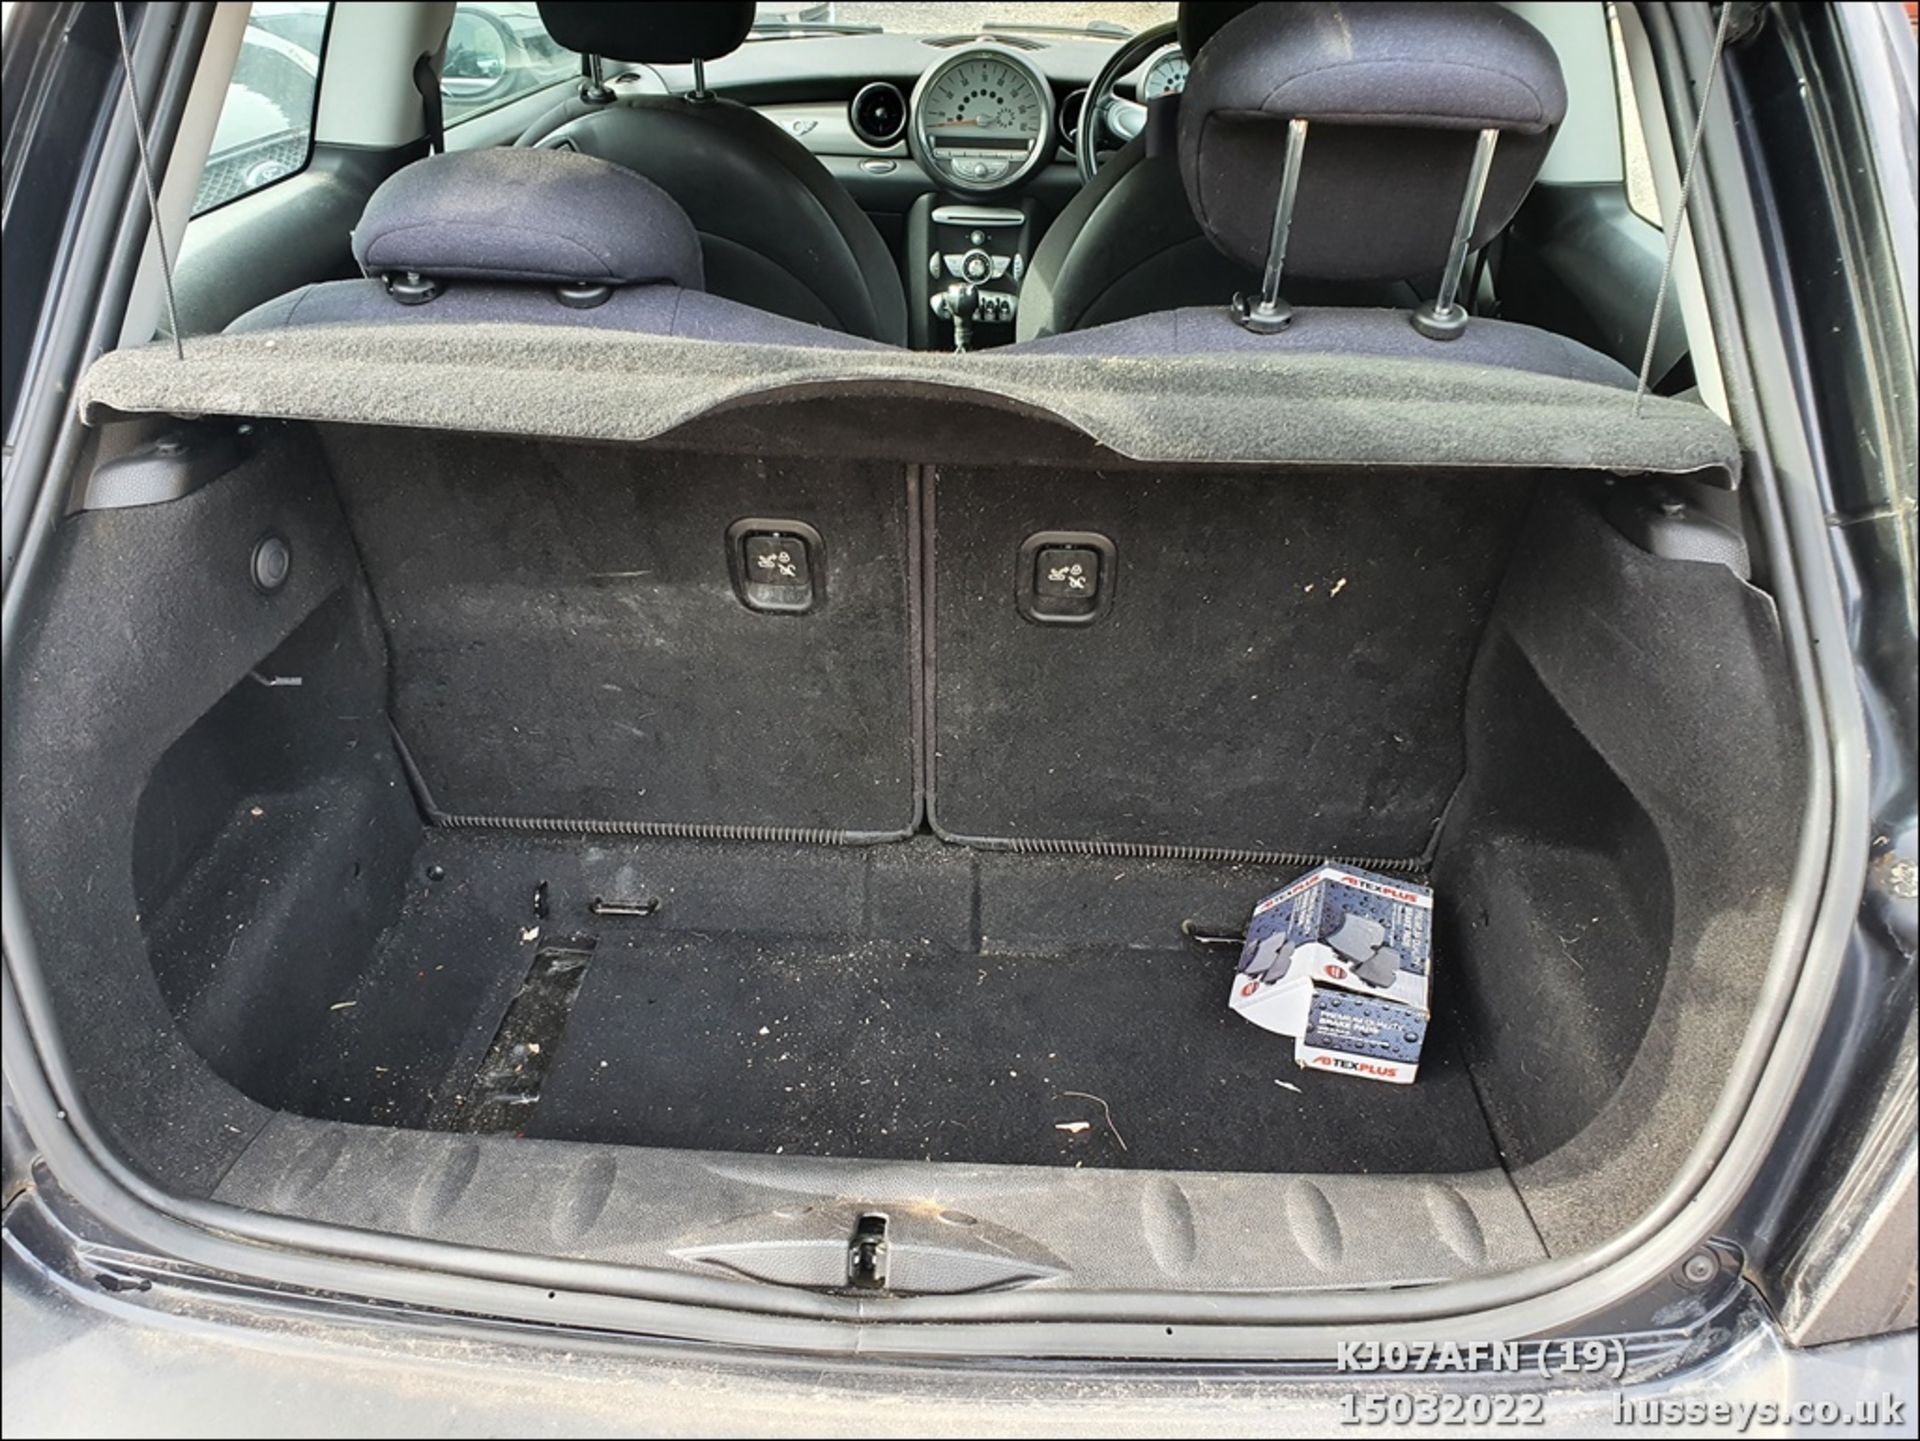 07/07 MINI COOPER - 1598cc 3dr Hatchback (Black, 92k) - Image 19 of 34